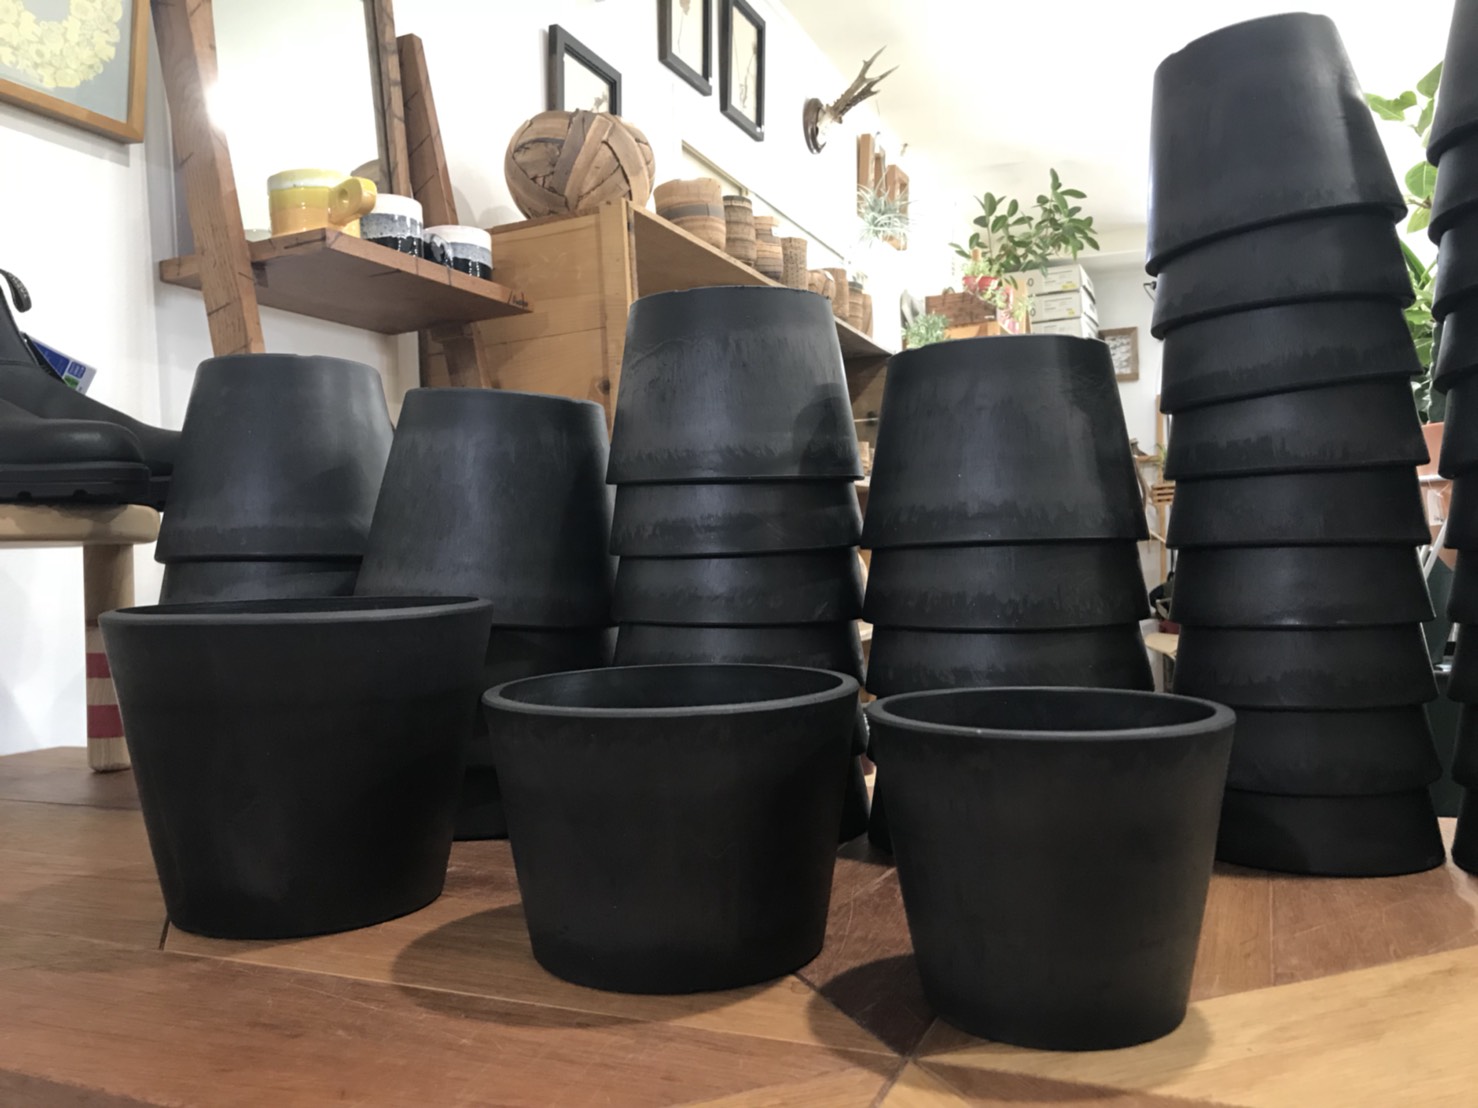 プラ鉢 ポット ブラック W10cm Wcm 黒プラ鉢 植木鉢 Black Plastic Pot Clutch Furniture